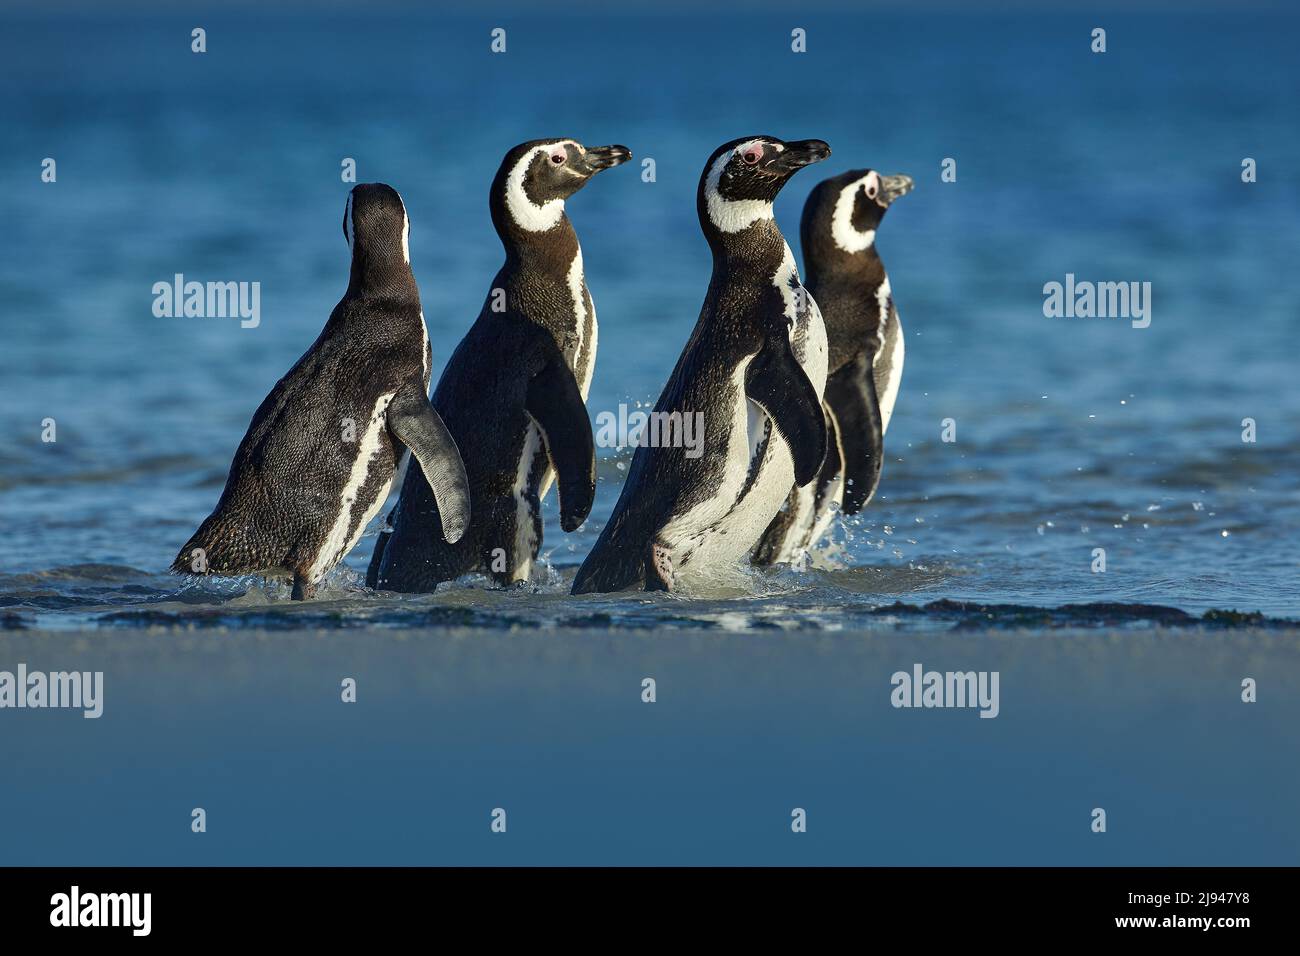 Pinguin im Wasser. Vögel spielen in Meereswellen. Seevogel im Wasser. Magellanic Pinguin mit Meereswelle im Hintergrund, Falklandinseln, Antarktis Stockfoto